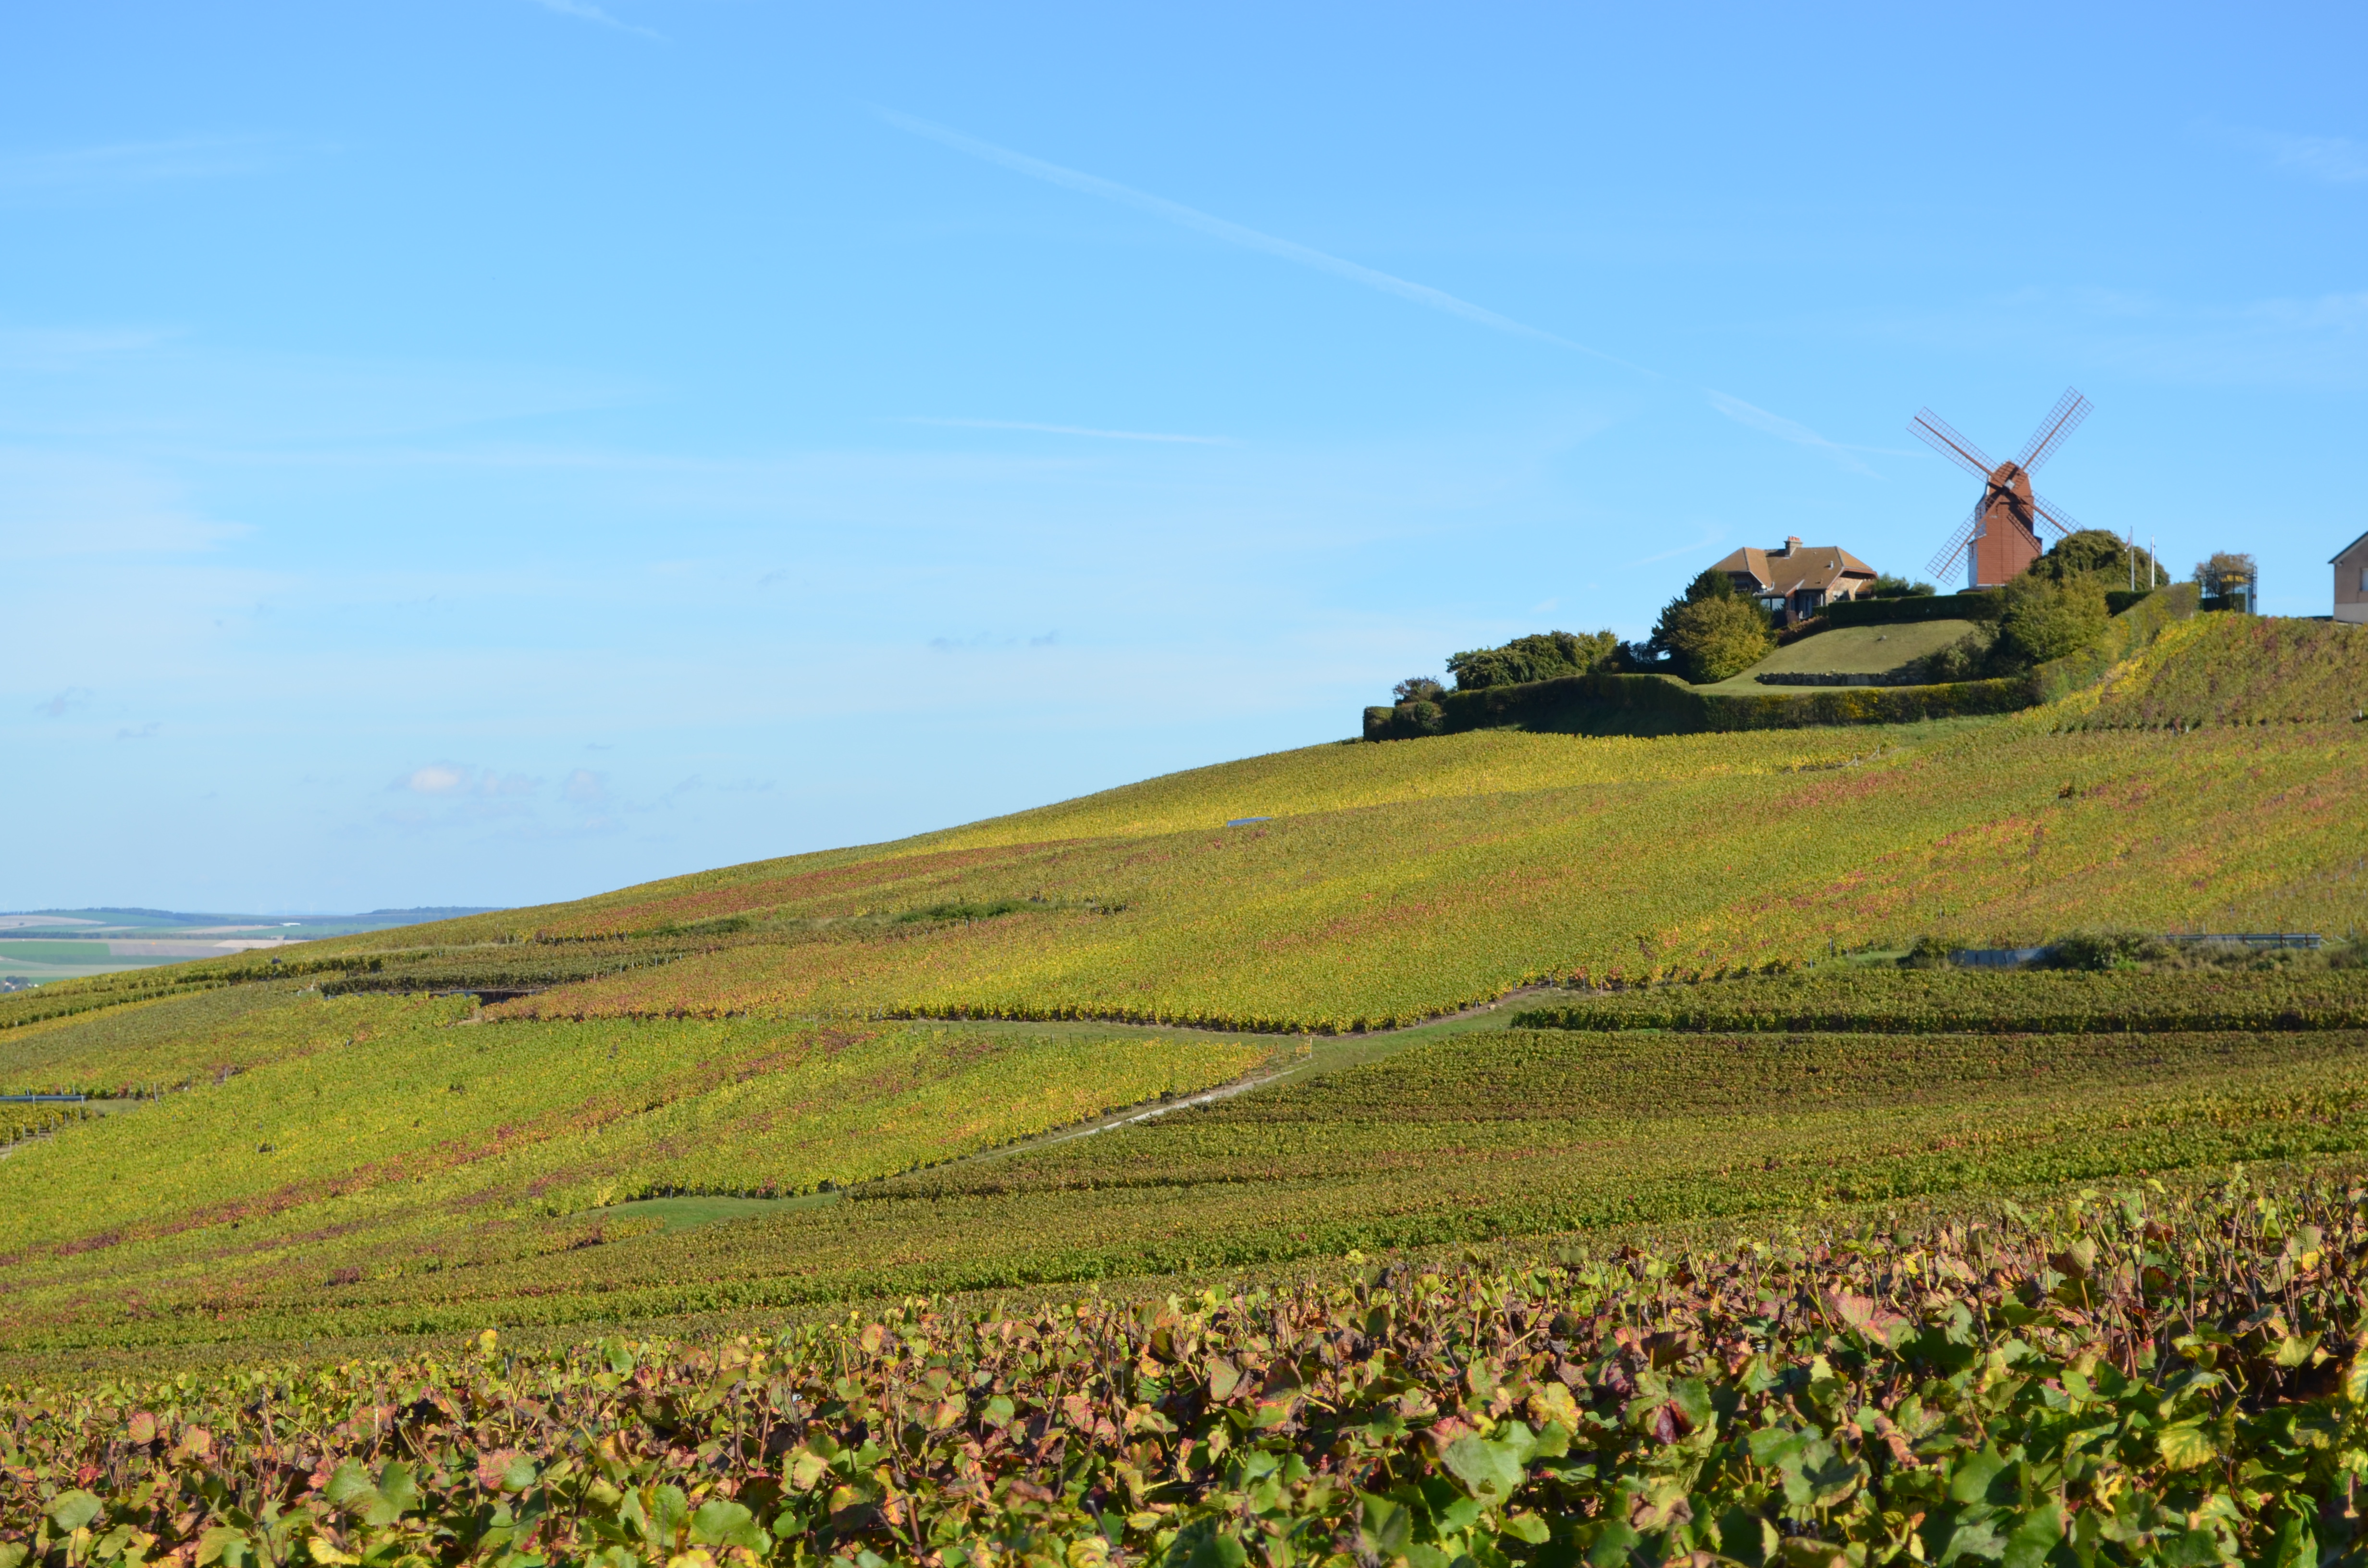 Notre voyage à vélo vous conduira à travers les vignobles de la Champagne entre Reims et Epernay. 